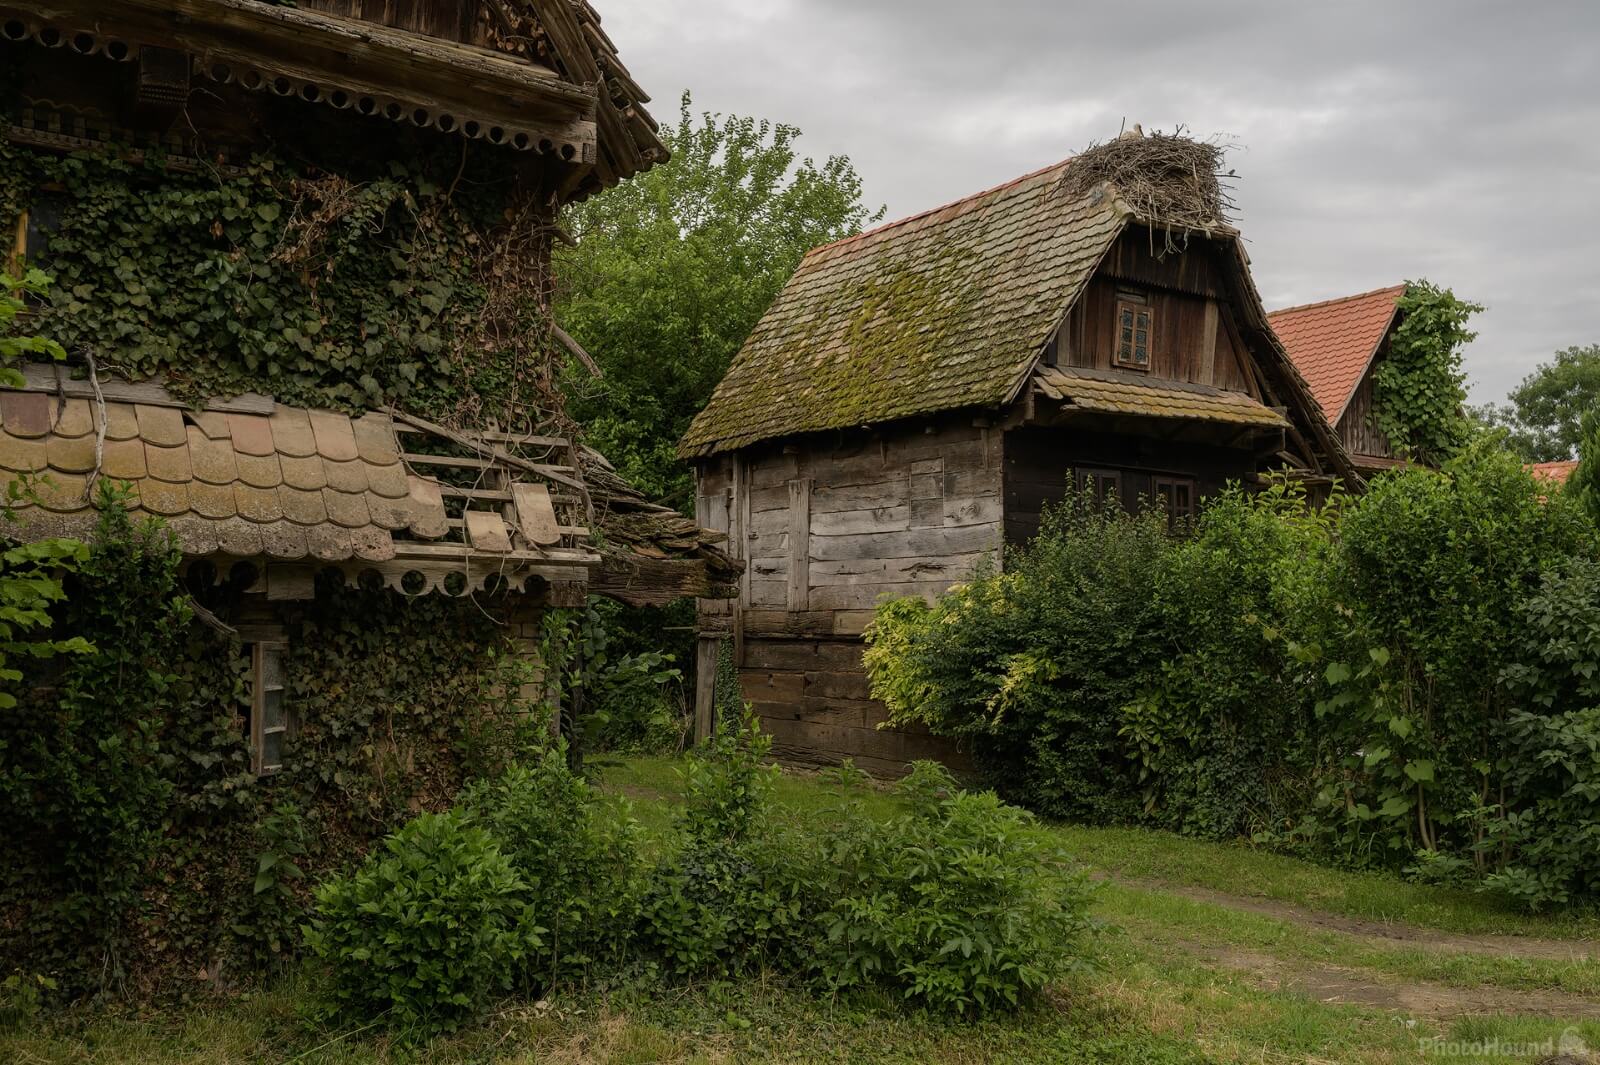 Image of Čigoč Village by Luka Esenko